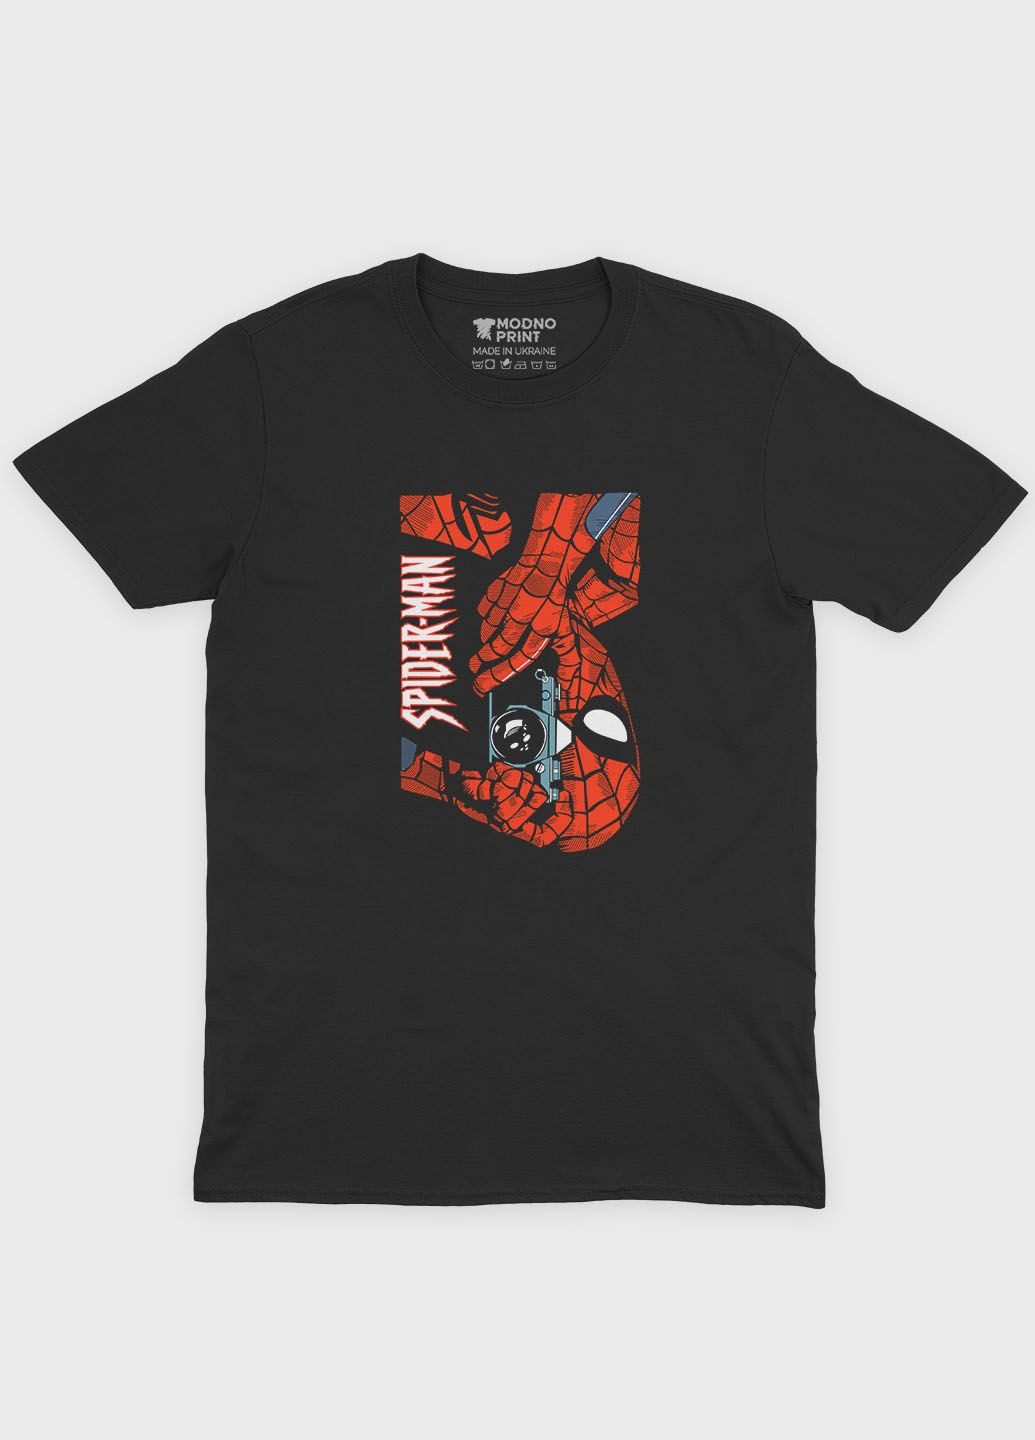 Черная демисезонная футболка для мальчика с принтом супергероя - человек-паук (ts001-1-bl-006-014-042-b) Modno